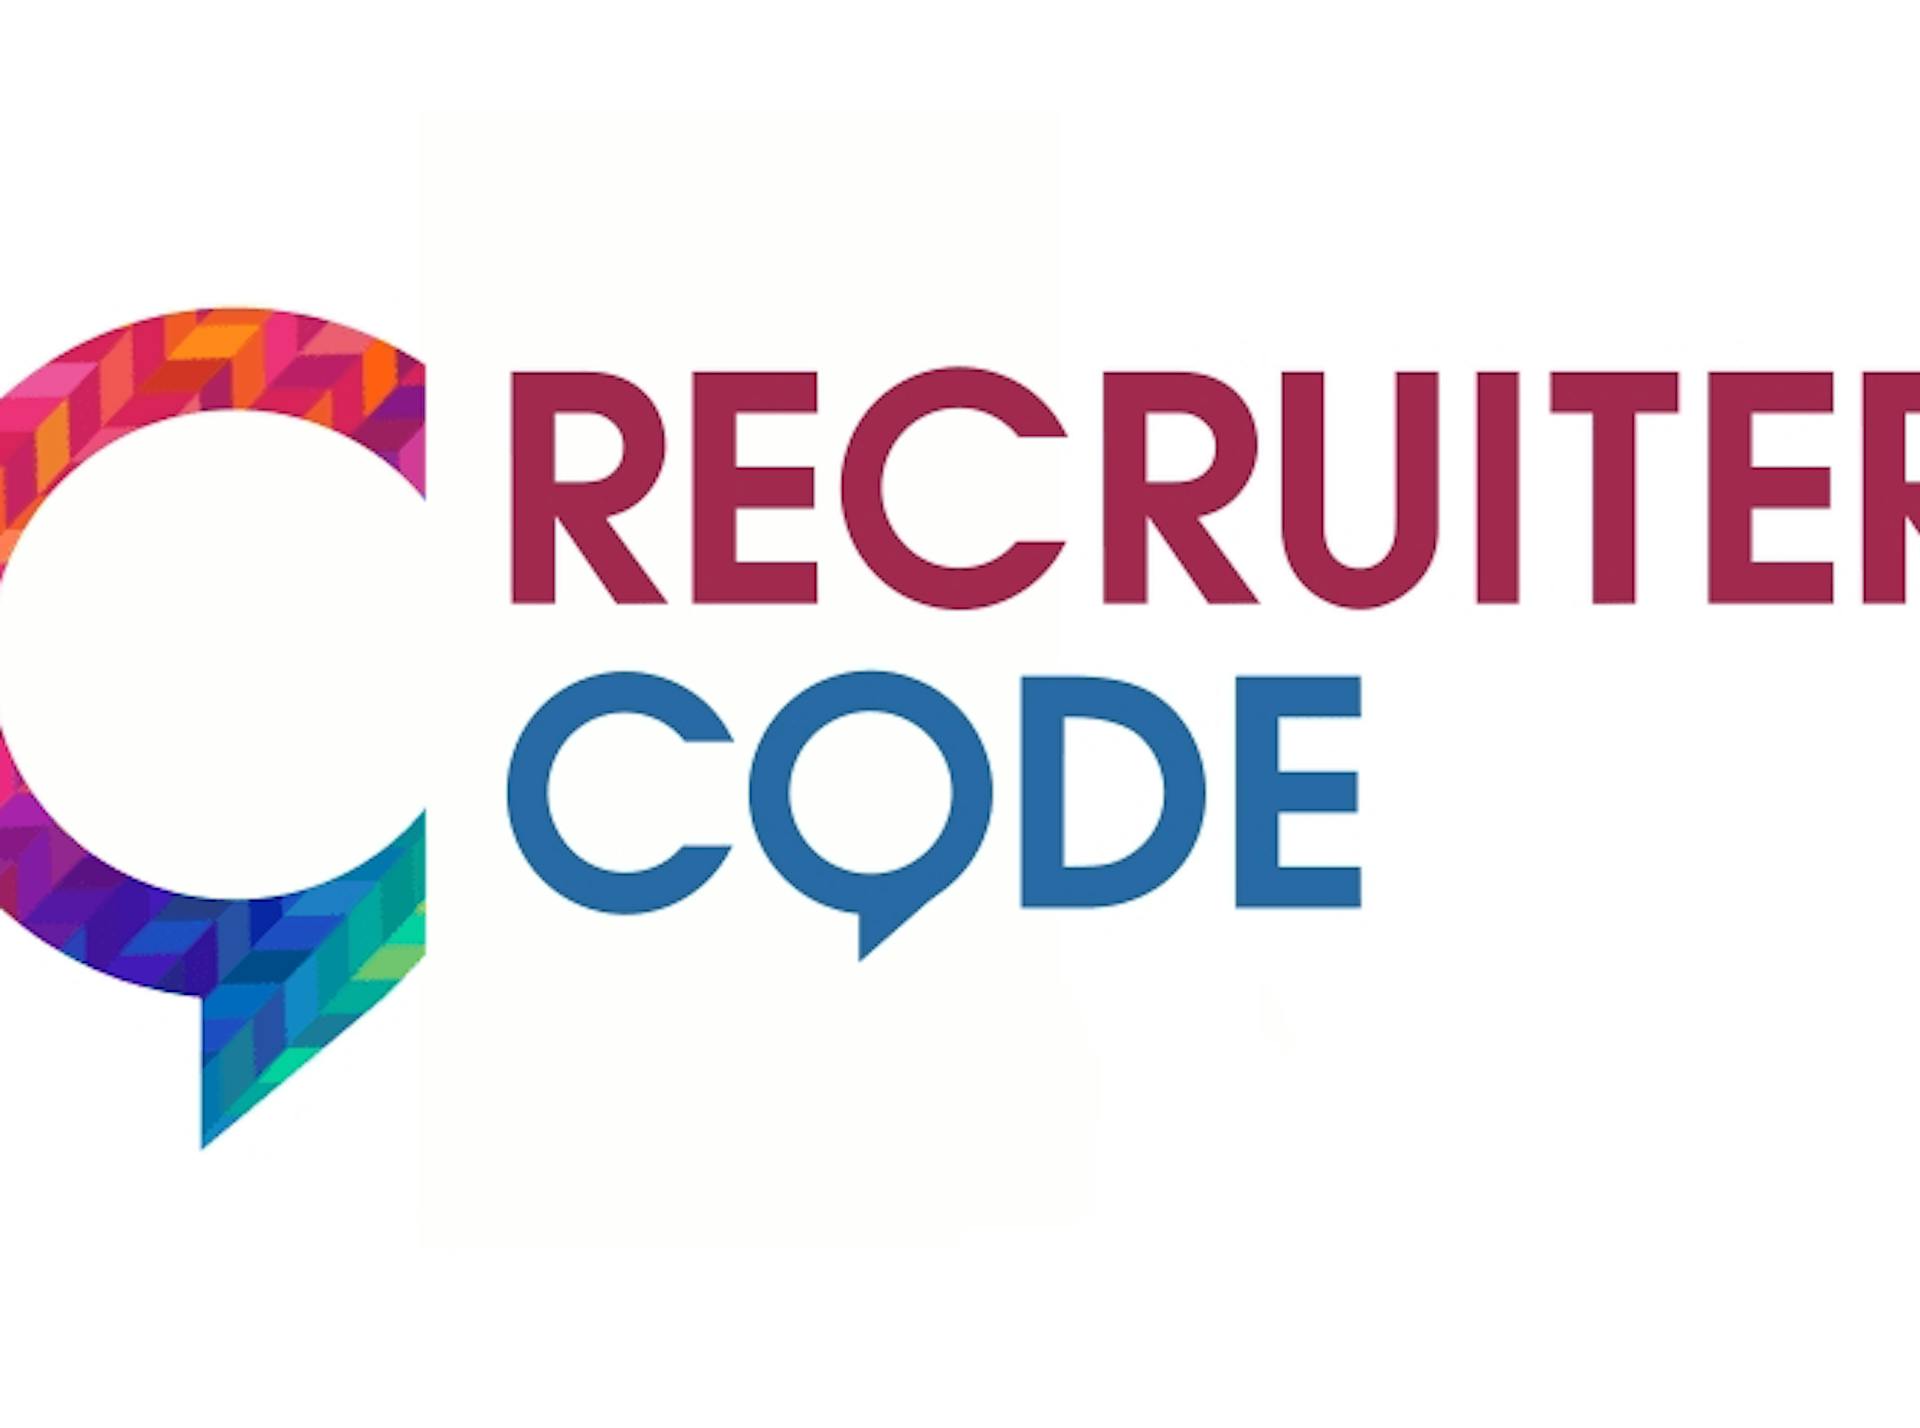 Recruiter Code